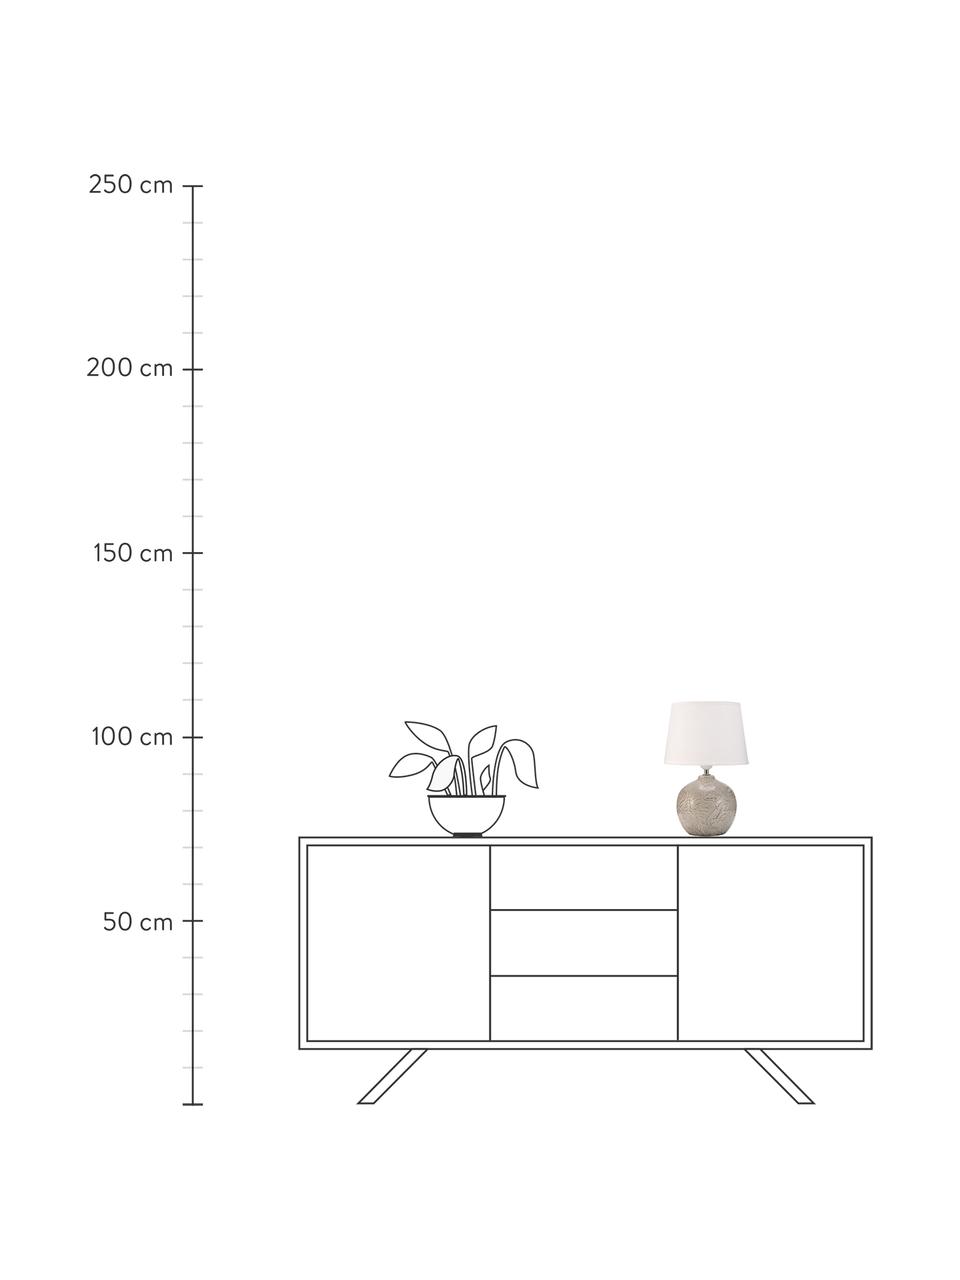 Lámpara de mesa Tender Love, Pantalla: tela, Cable: cubierto en tela, Blanco, greige, Ø 25 x Al 37 cm